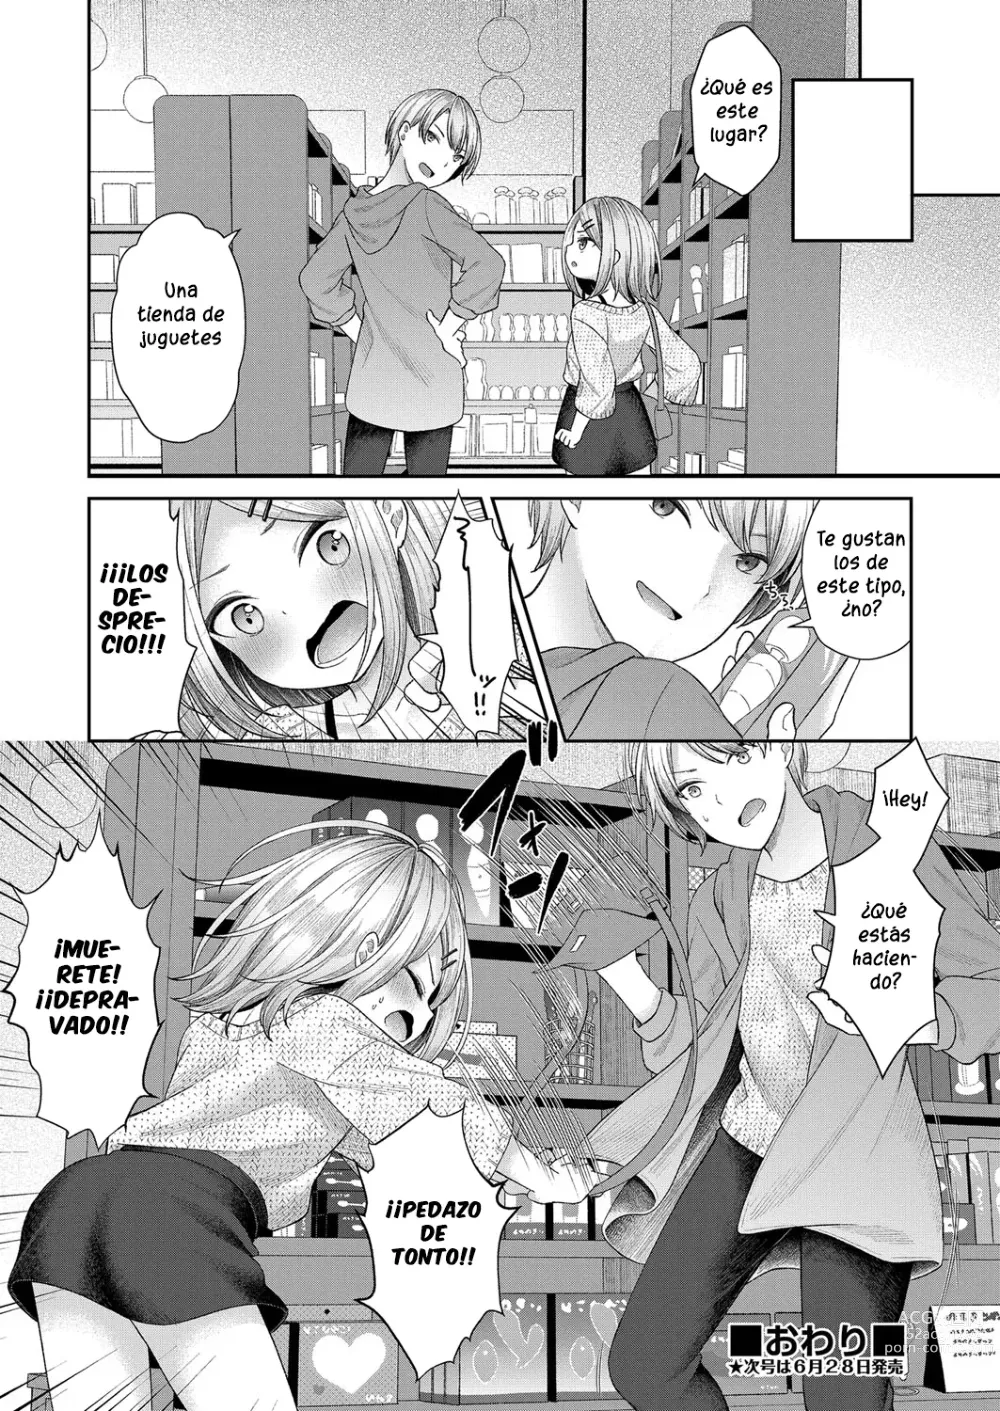 Page 24 of manga Dicktok